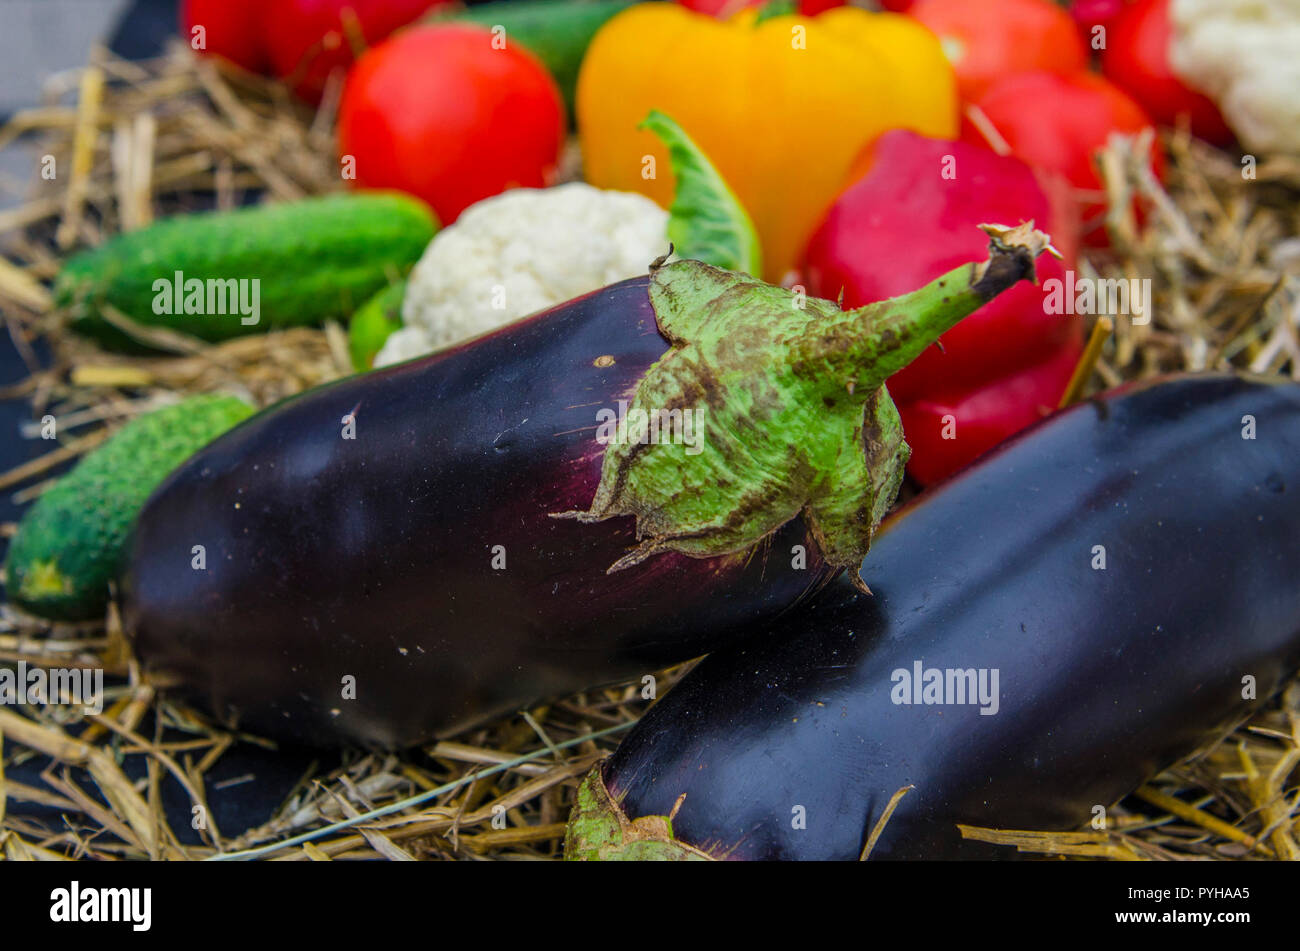 Verdure colorate e fieno. La mietitura. Diversi ortaggi: pepe, pomodoro, cetriolo, melanzana, cavolfiore, cavolo Foto Stock